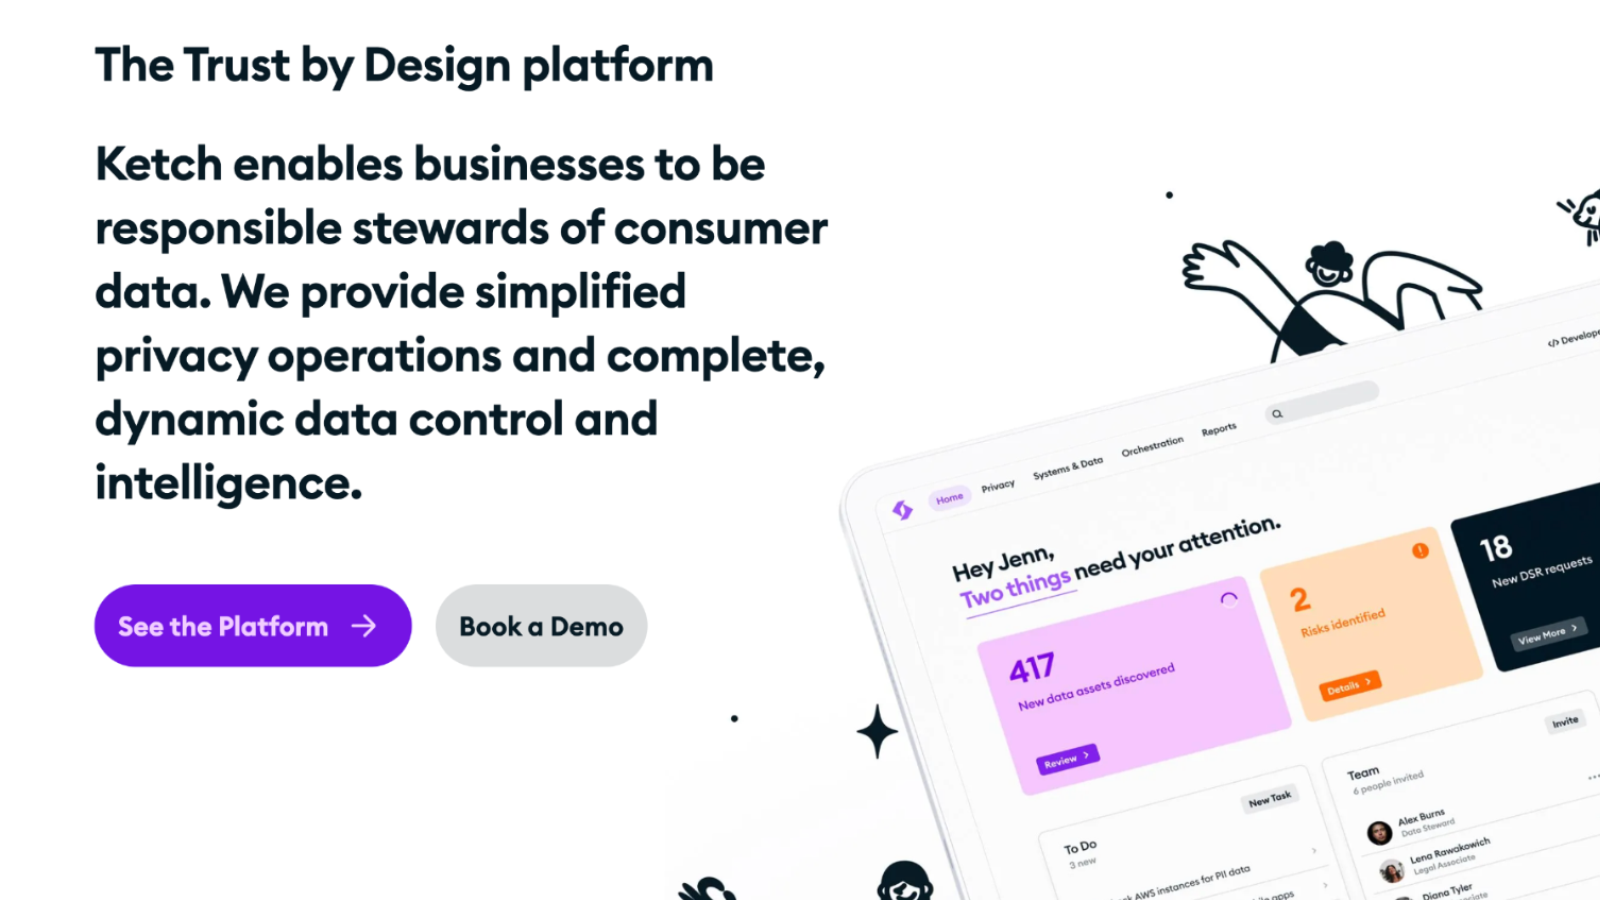 Tela de marketing do Ketch sobre a Plataforma Ketch Trust by Design